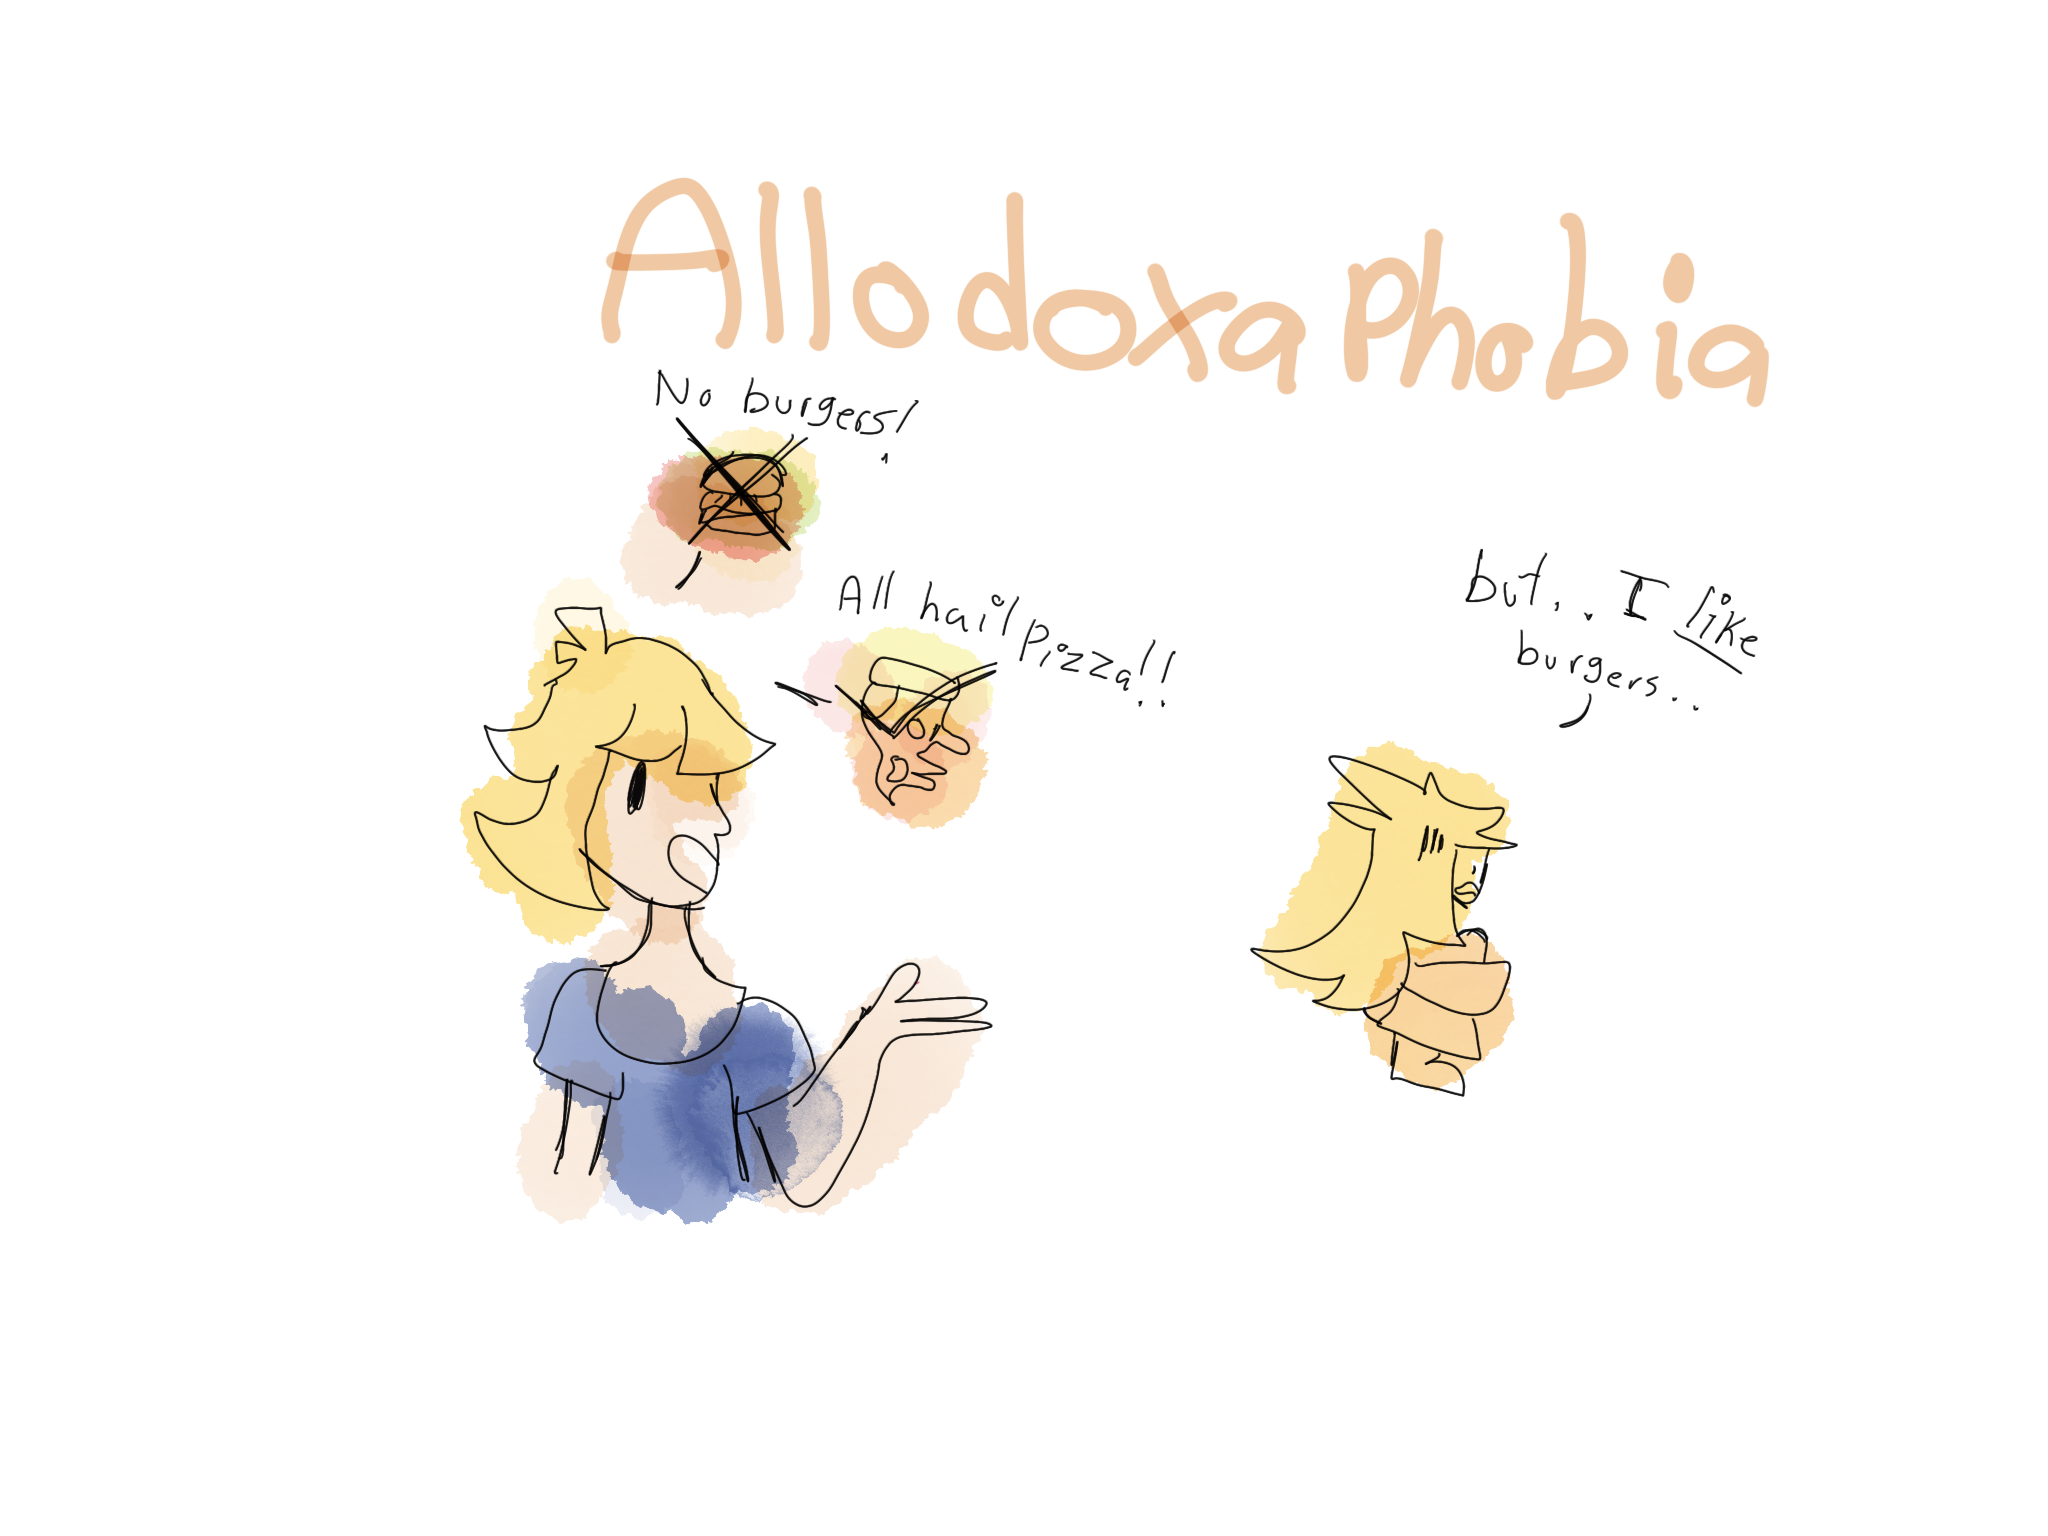 Allodoxaphobia